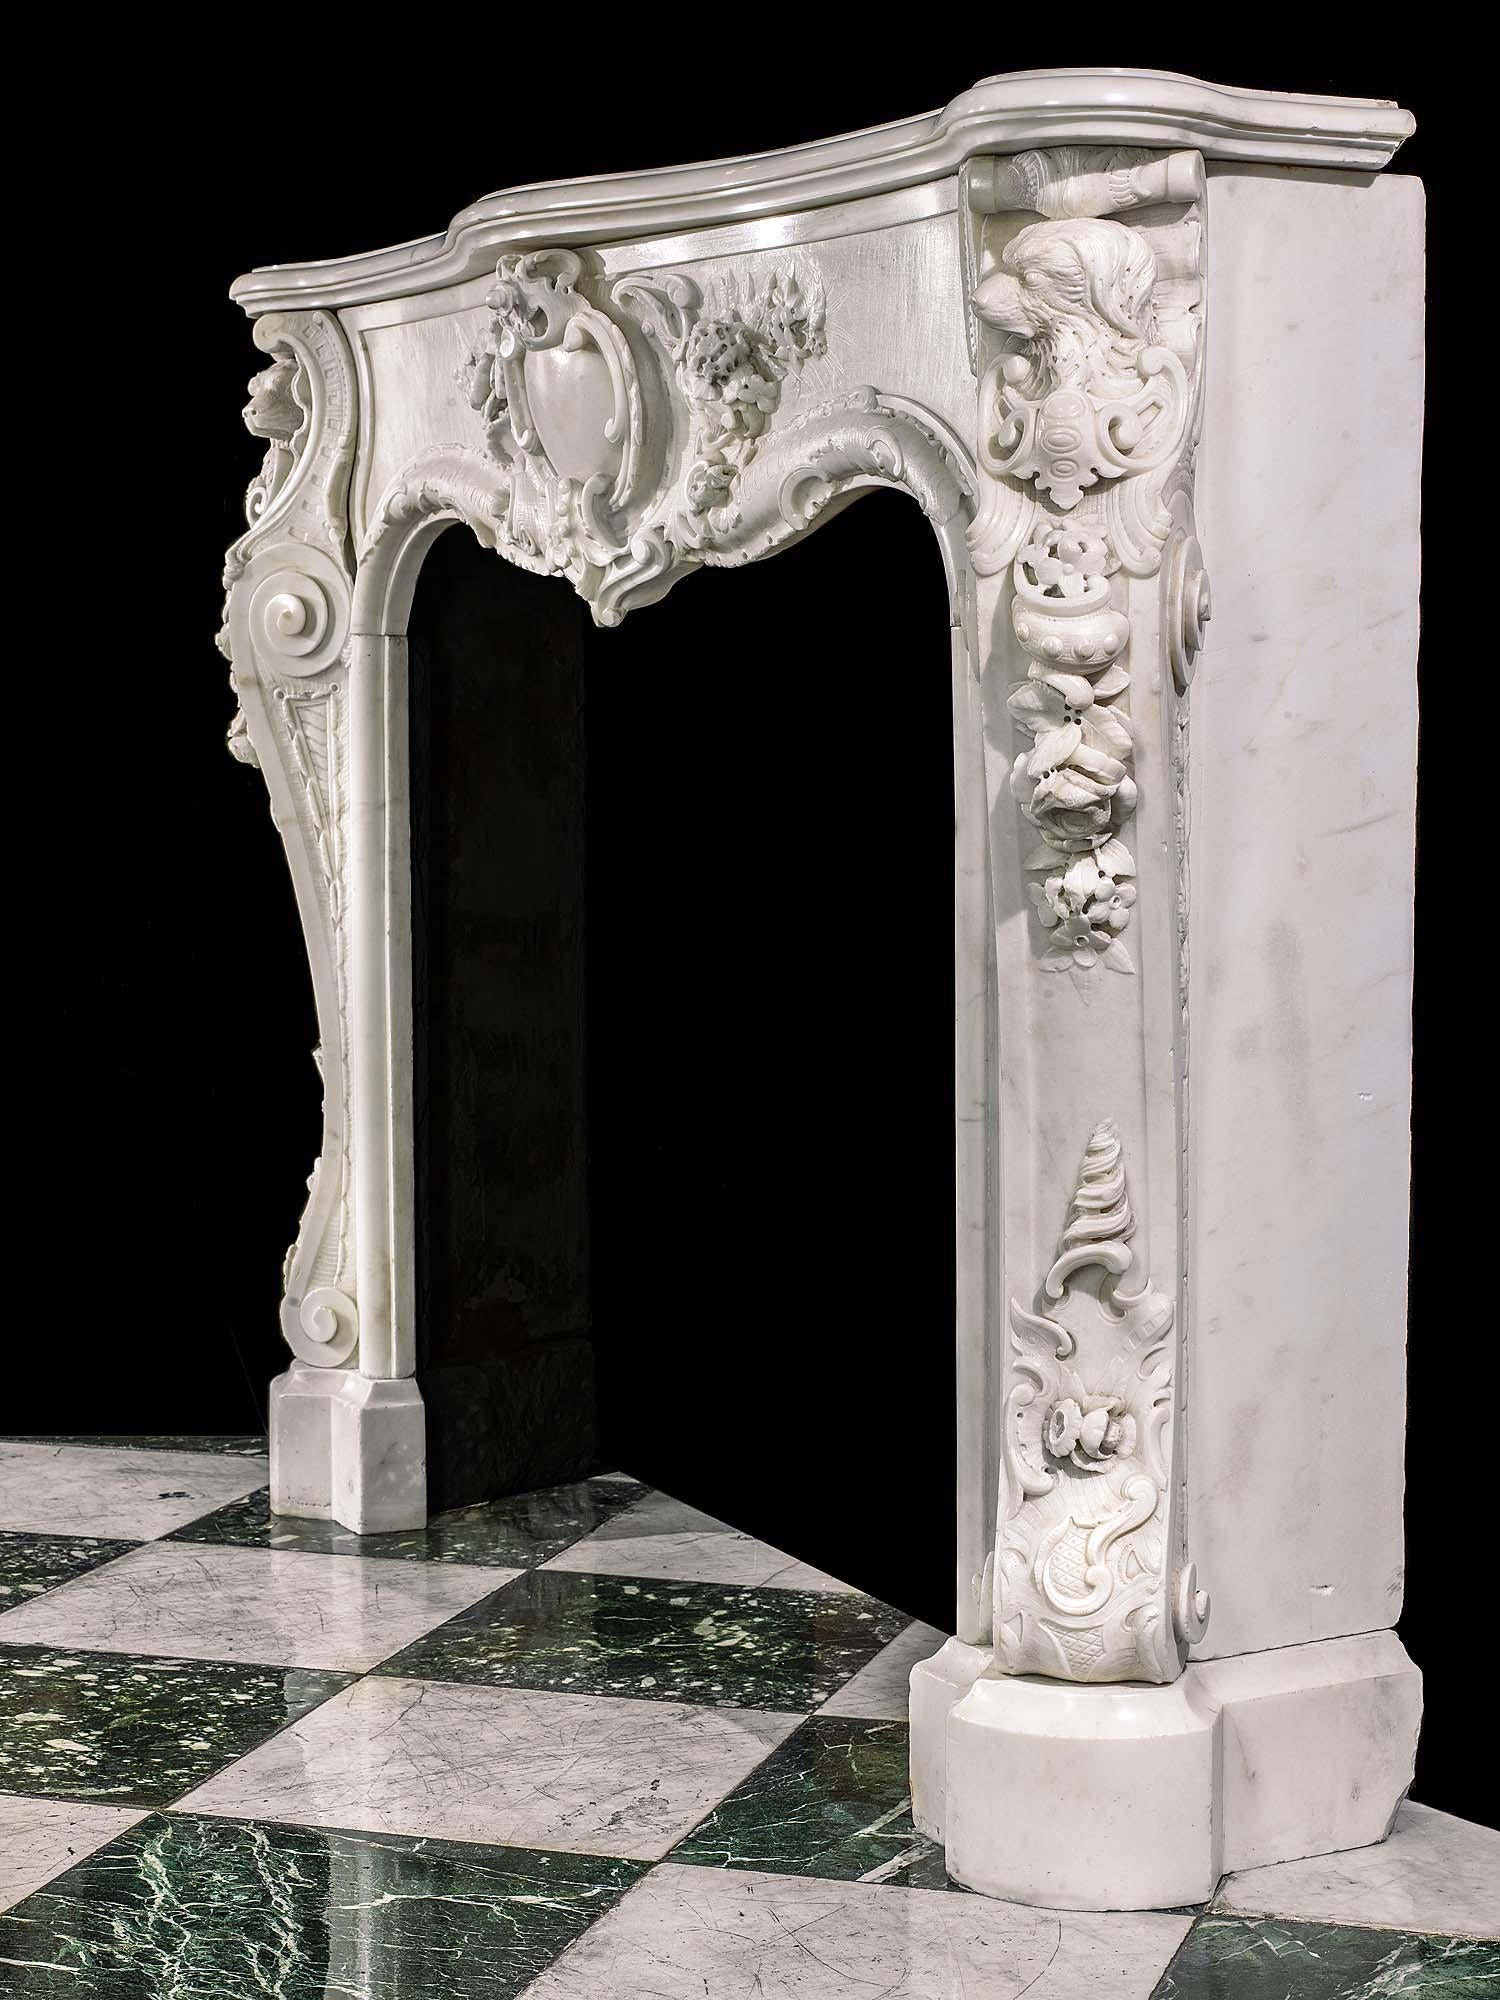 Rare et remarquable cheminée ancienne en marbre statuaire rococo anglais, à la décoration florale et rocaille richement et minutieusement sculptée. Le cartouche central, de conception et d'exécution audacieuses, est bordé de motifs floraux en subtil